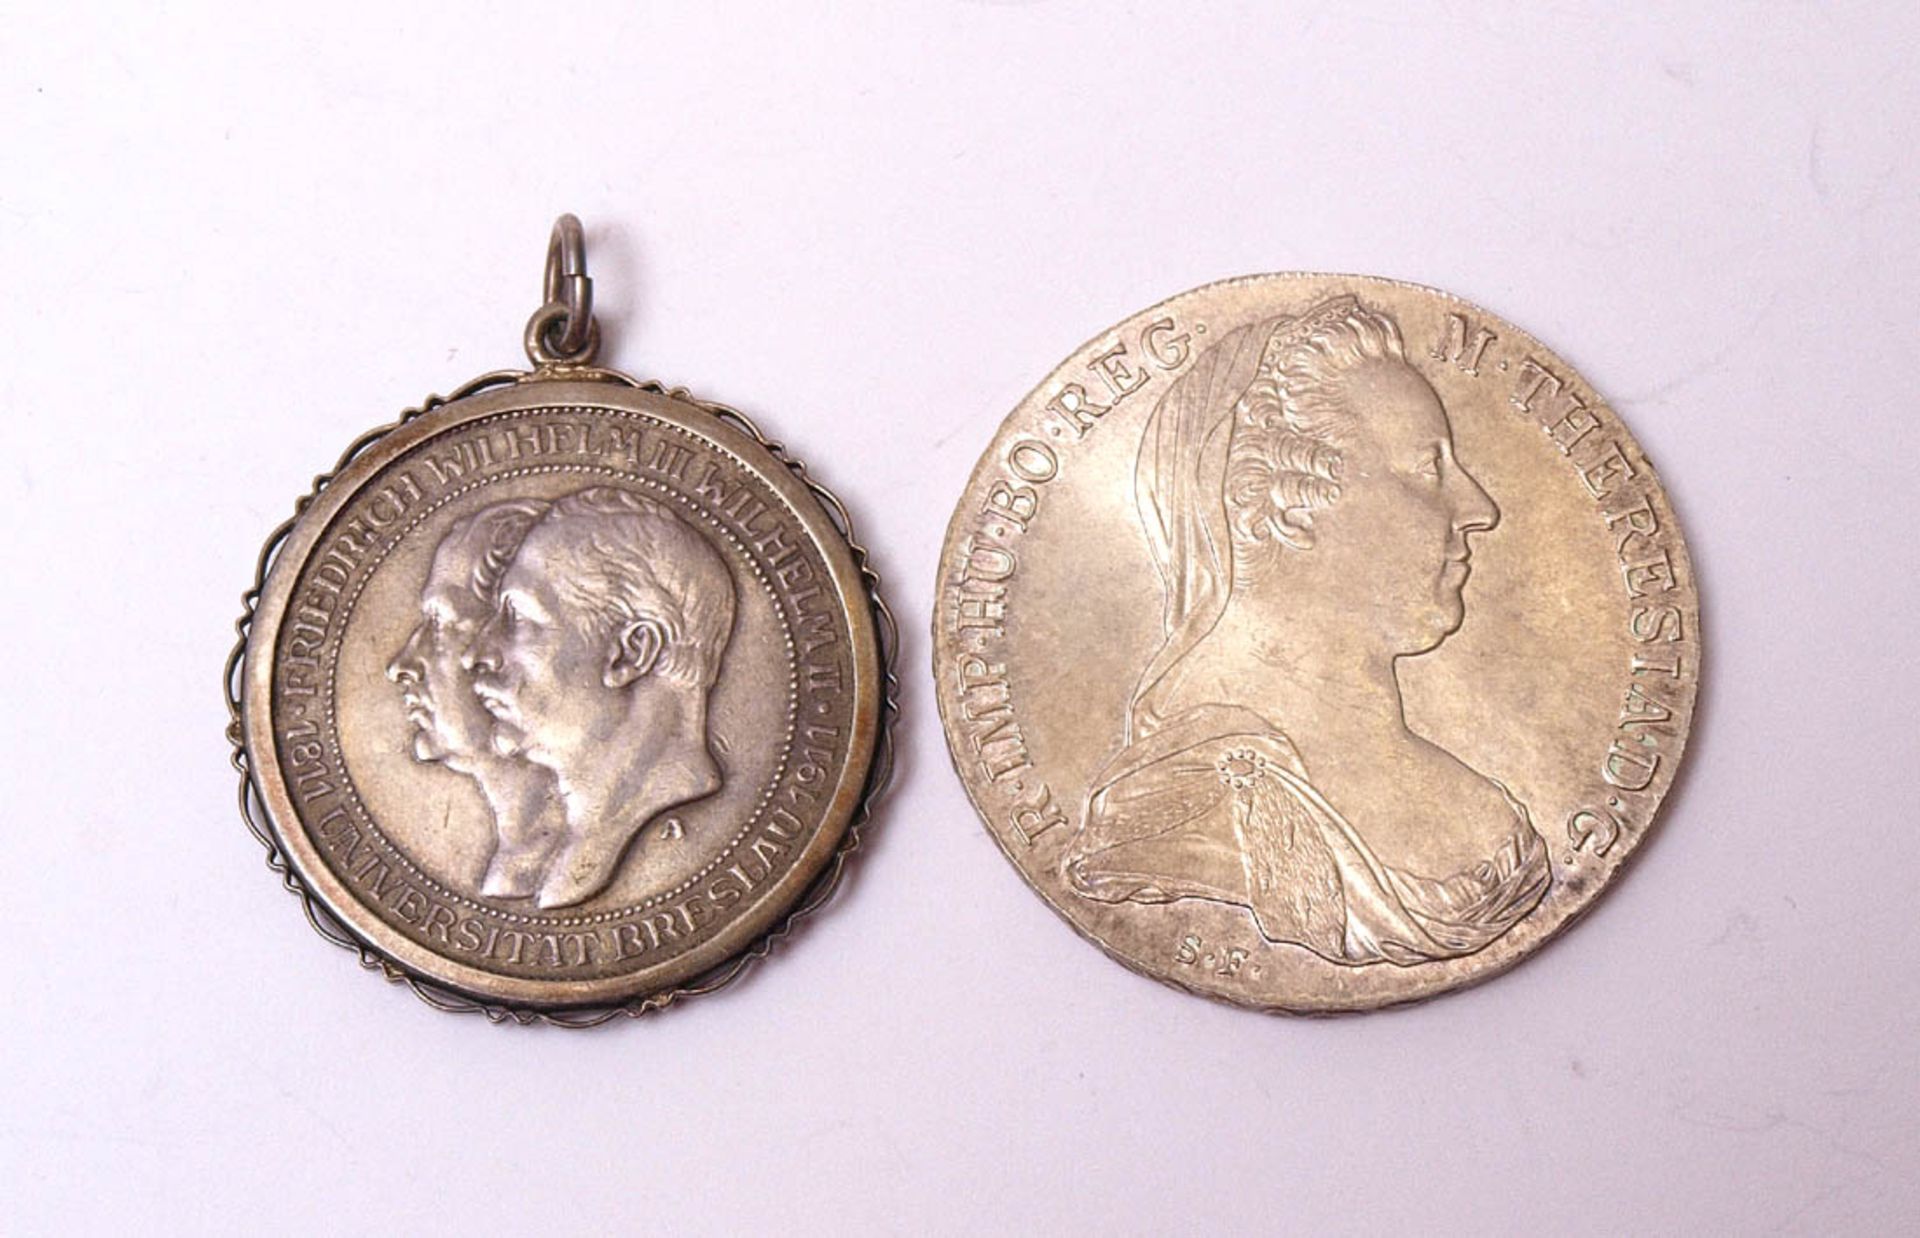 Zwei SilbermünzenDrei-Mark-Stück, Deutsches Reich 1911 (als Anhänger) und Maria-Theresien-Taler.